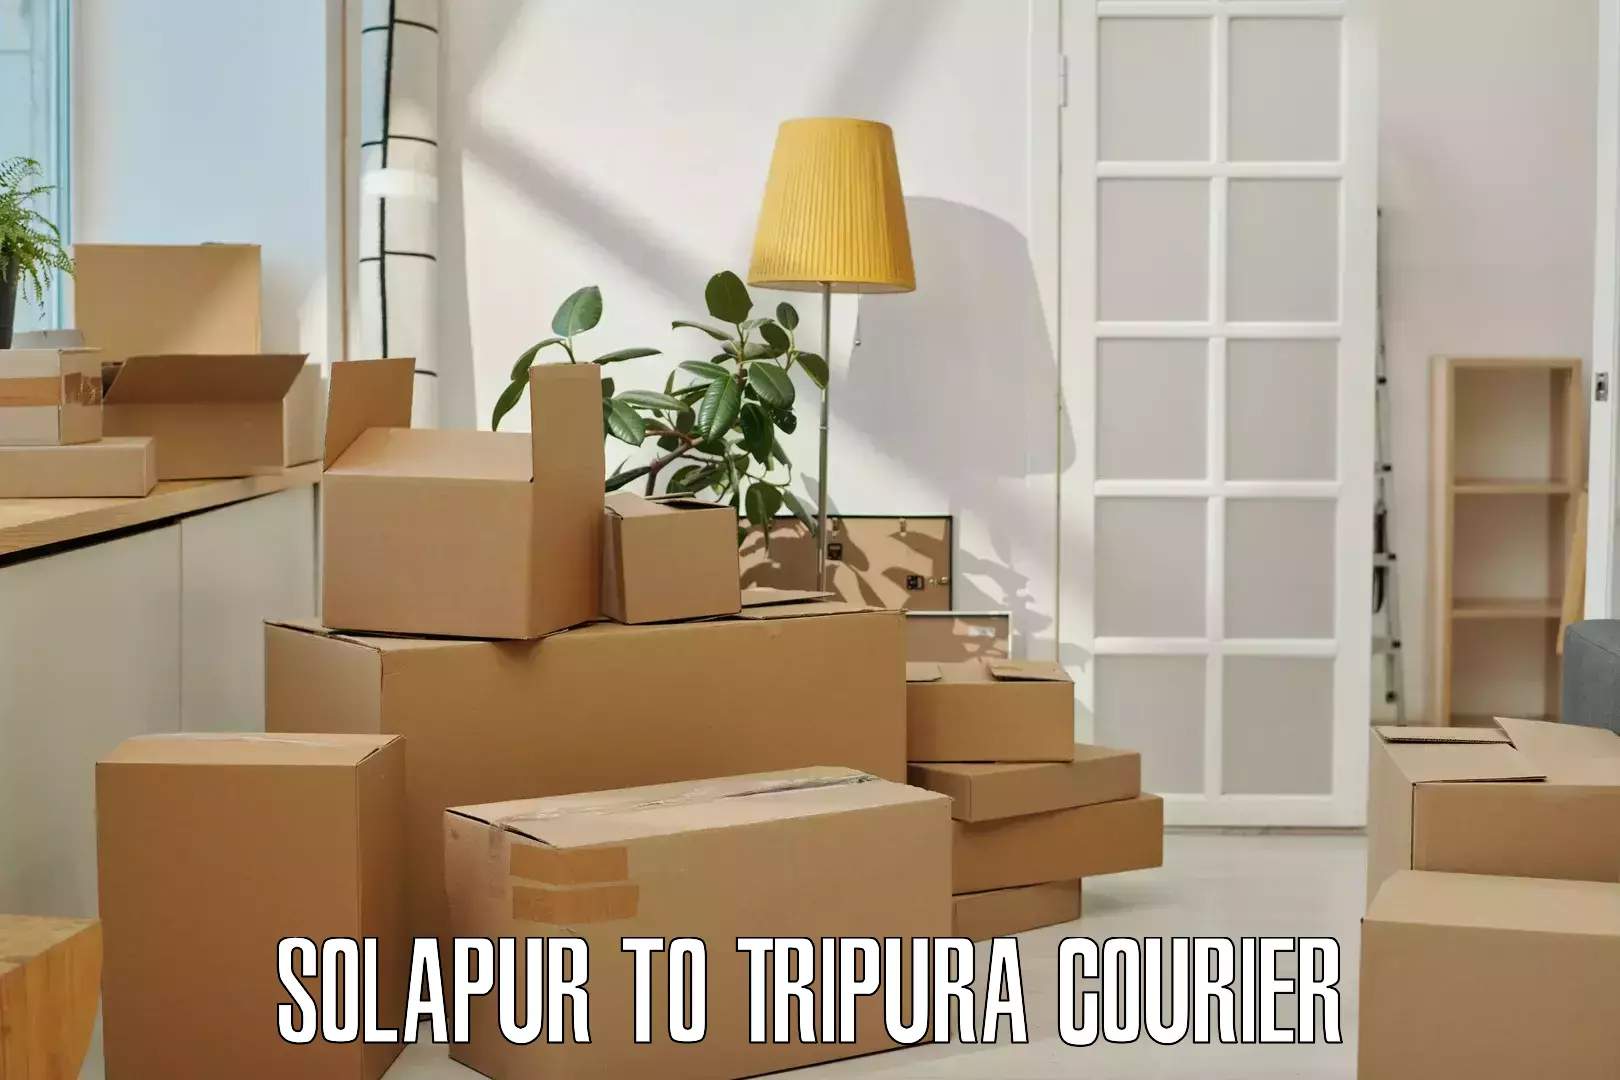 User-friendly courier app Solapur to Manu Bazar